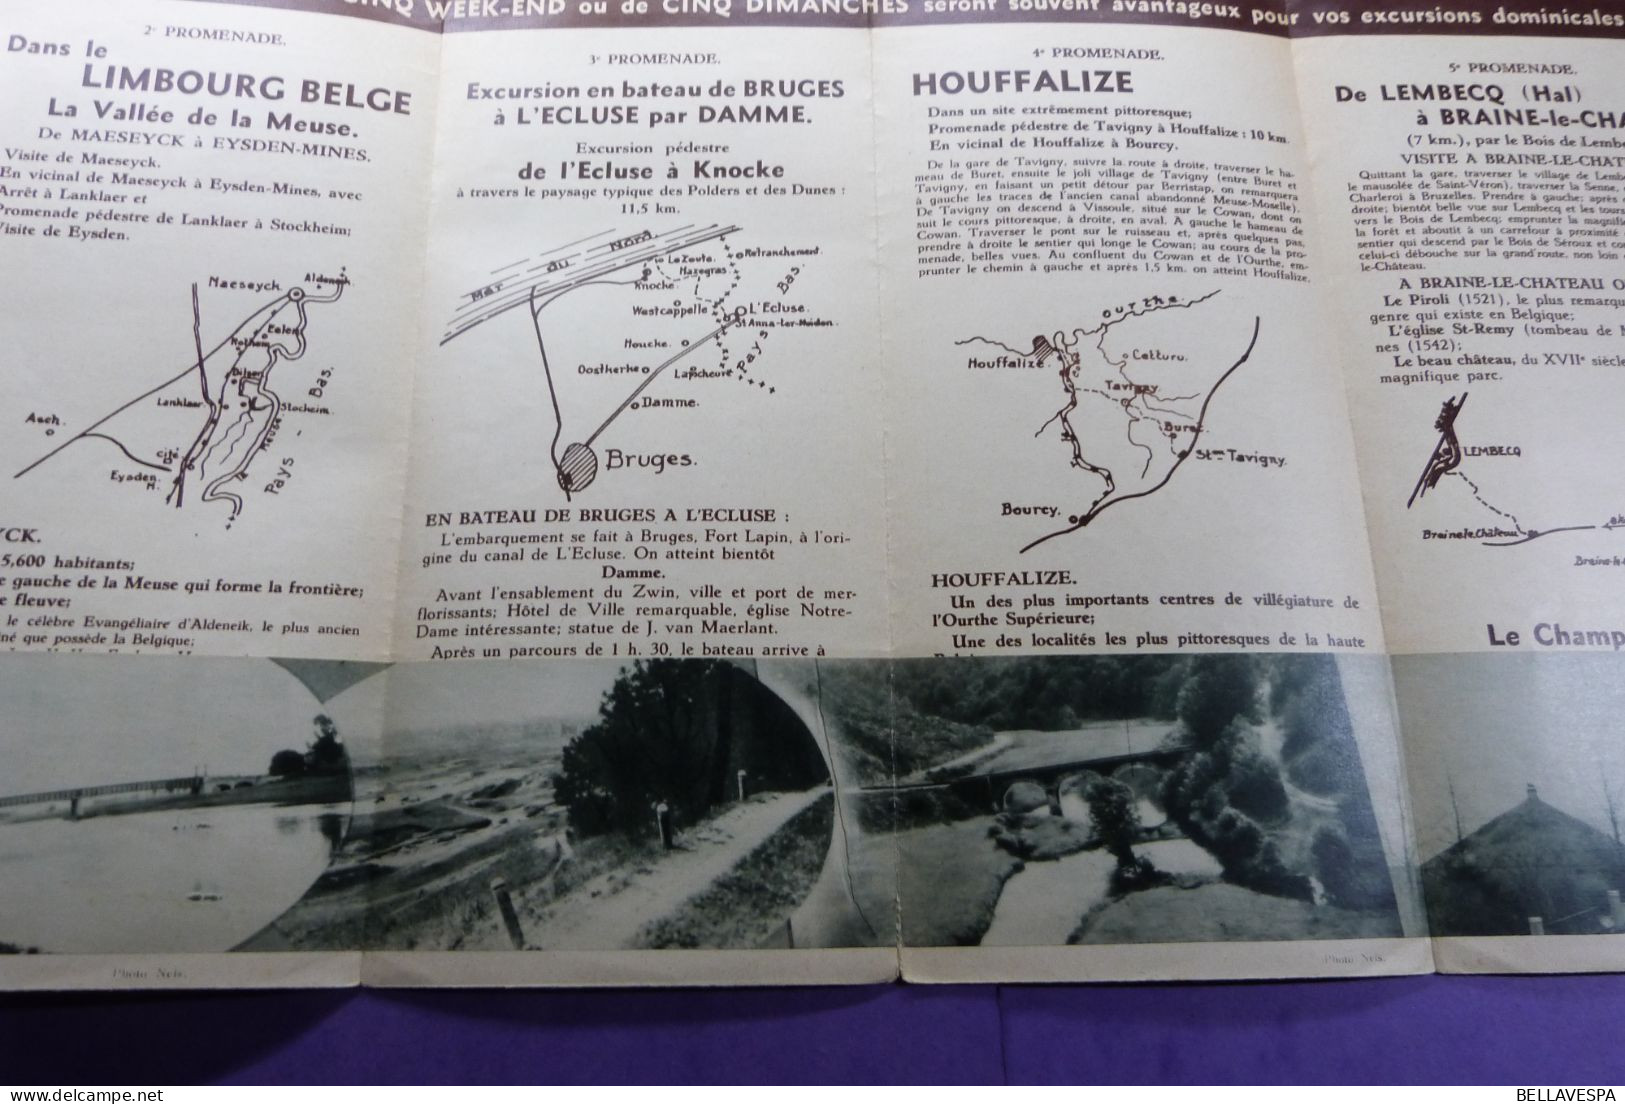 Soc. Nat.des Chemins de fer Belges EXCURSIONS Flyer Reisroutes belgische Spoorwegen ancien brochures Lot x 19 stuks